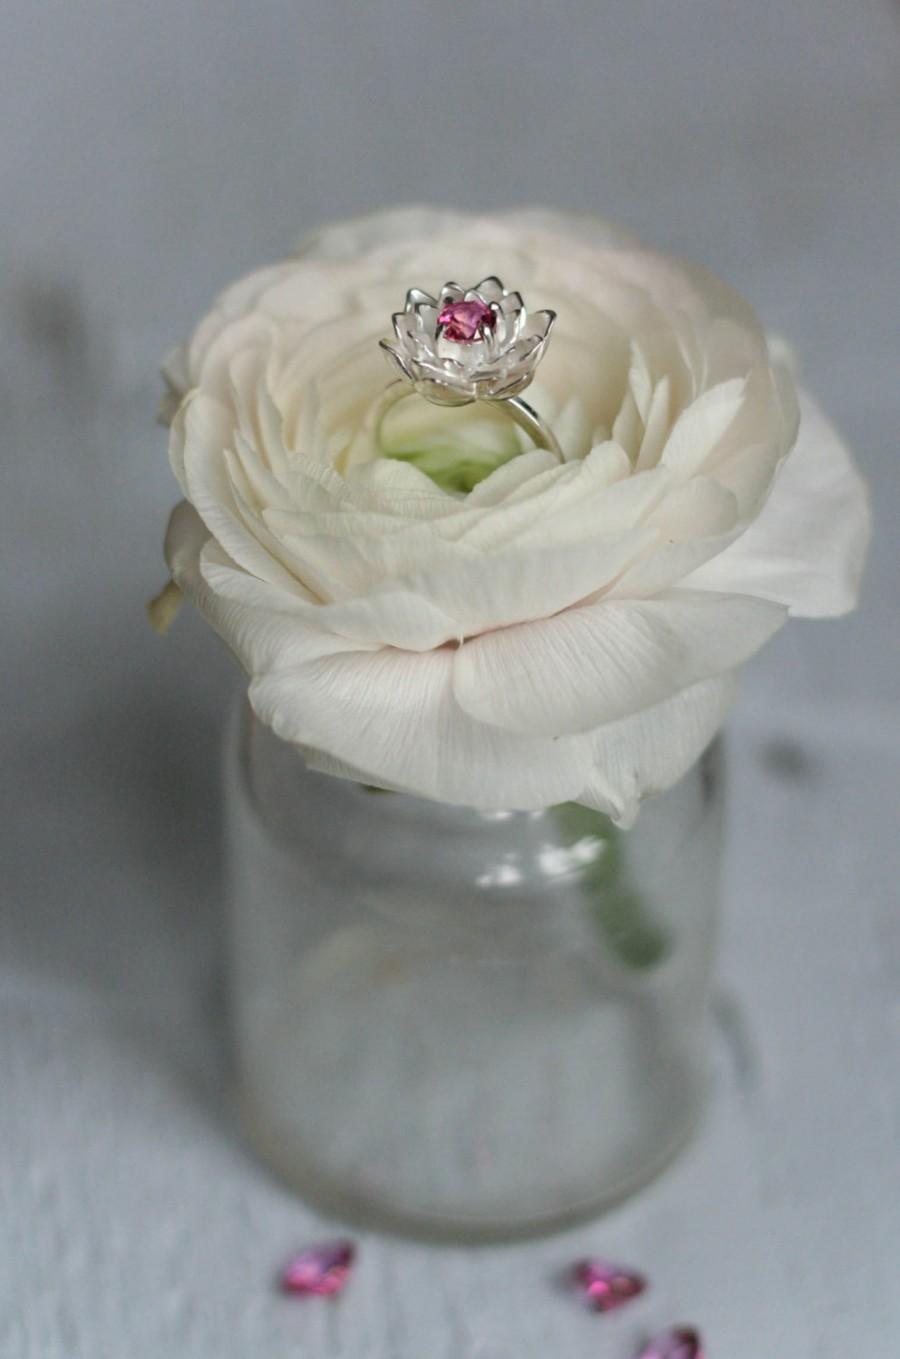 Mariage - Flower engagement ring, pink topaz ring, proposal ring, pink gemstone ring, lotus ring, sterling silver ring, promise ring, lotus jewelry